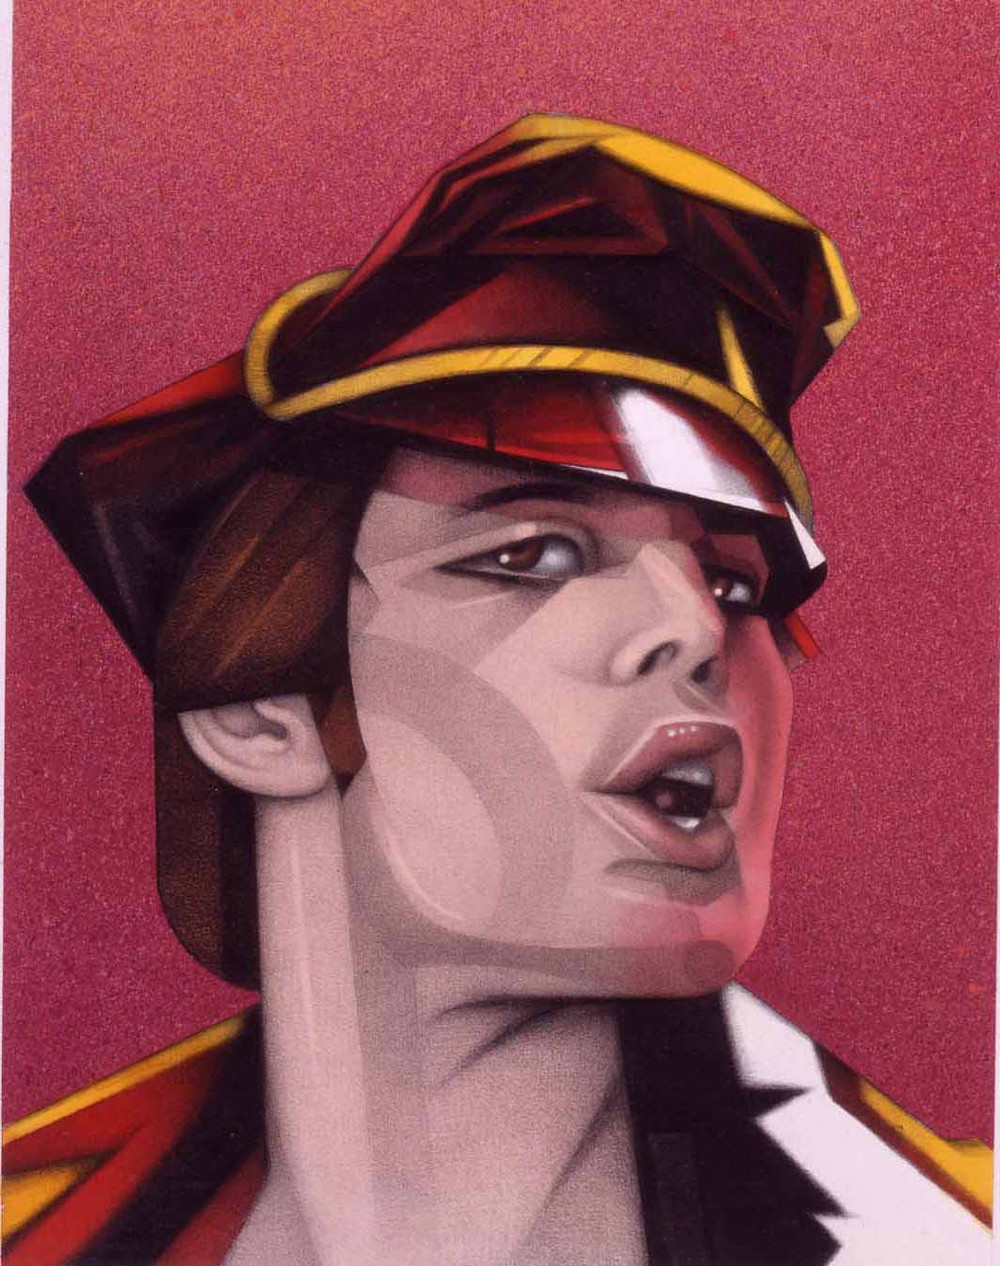 "Freddie Mercury" by Mel Odom